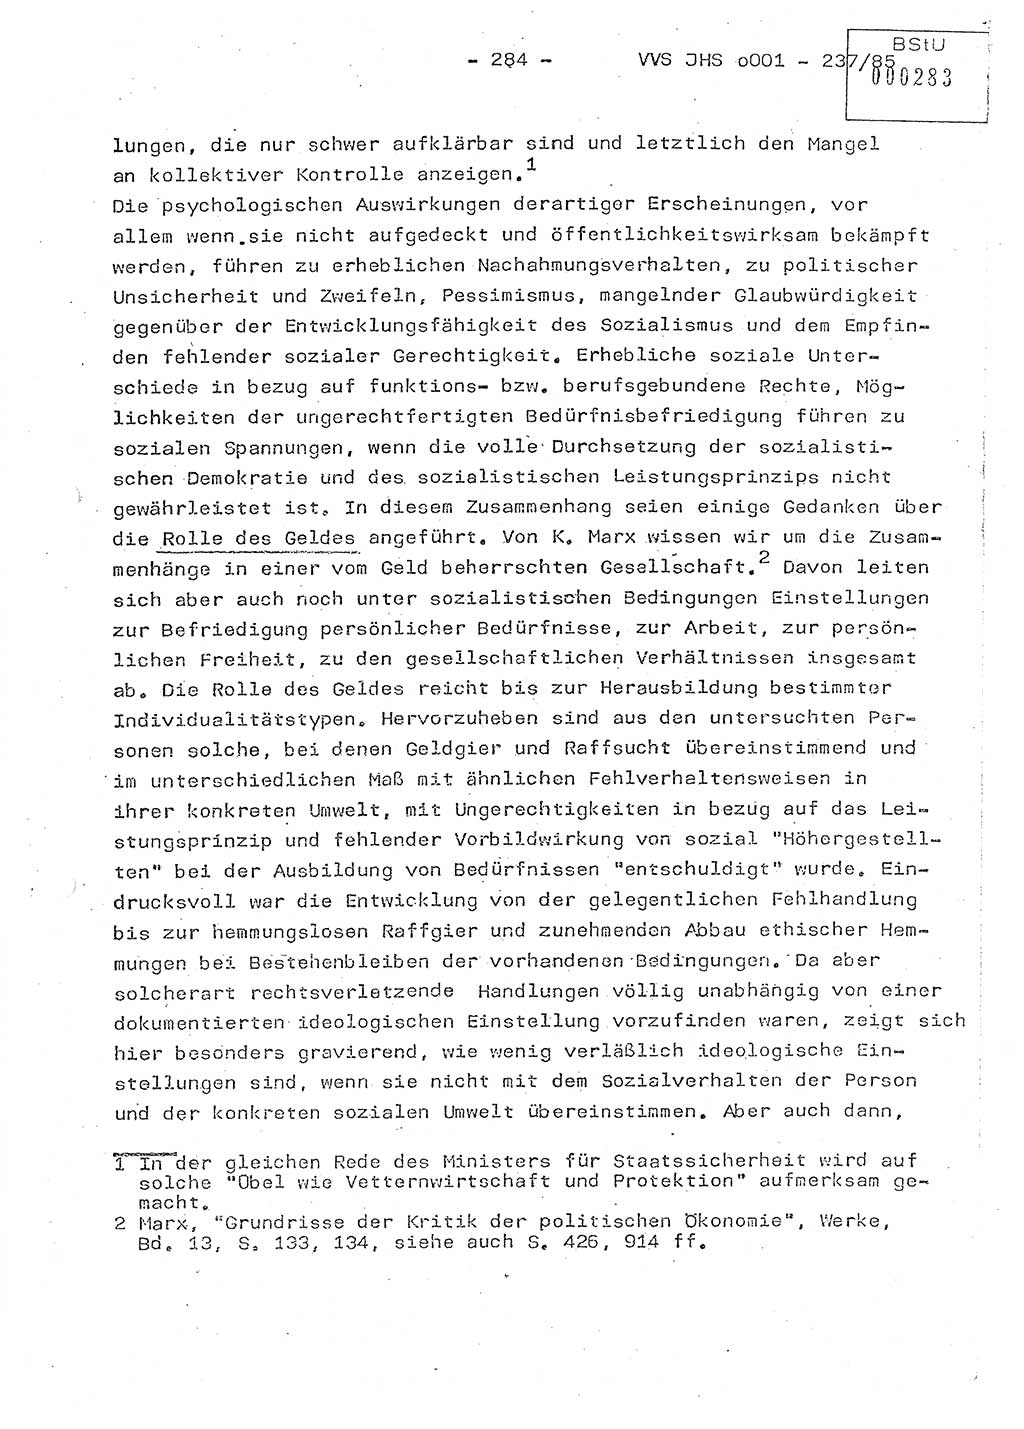 Dissertation Oberstleutnant Peter Jakulski (JHS), Oberstleutnat Christian Rudolph (HA Ⅸ), Major Horst Böttger (ZMD), Major Wolfgang Grüneberg (JHS), Major Albert Meutsch (JHS), Ministerium für Staatssicherheit (MfS) [Deutsche Demokratische Republik (DDR)], Juristische Hochschule (JHS), Vertrauliche Verschlußsache (VVS) o001-237/85, Potsdam 1985, Seite 284 (Diss. MfS DDR JHS VVS o001-237/85 1985, S. 284)